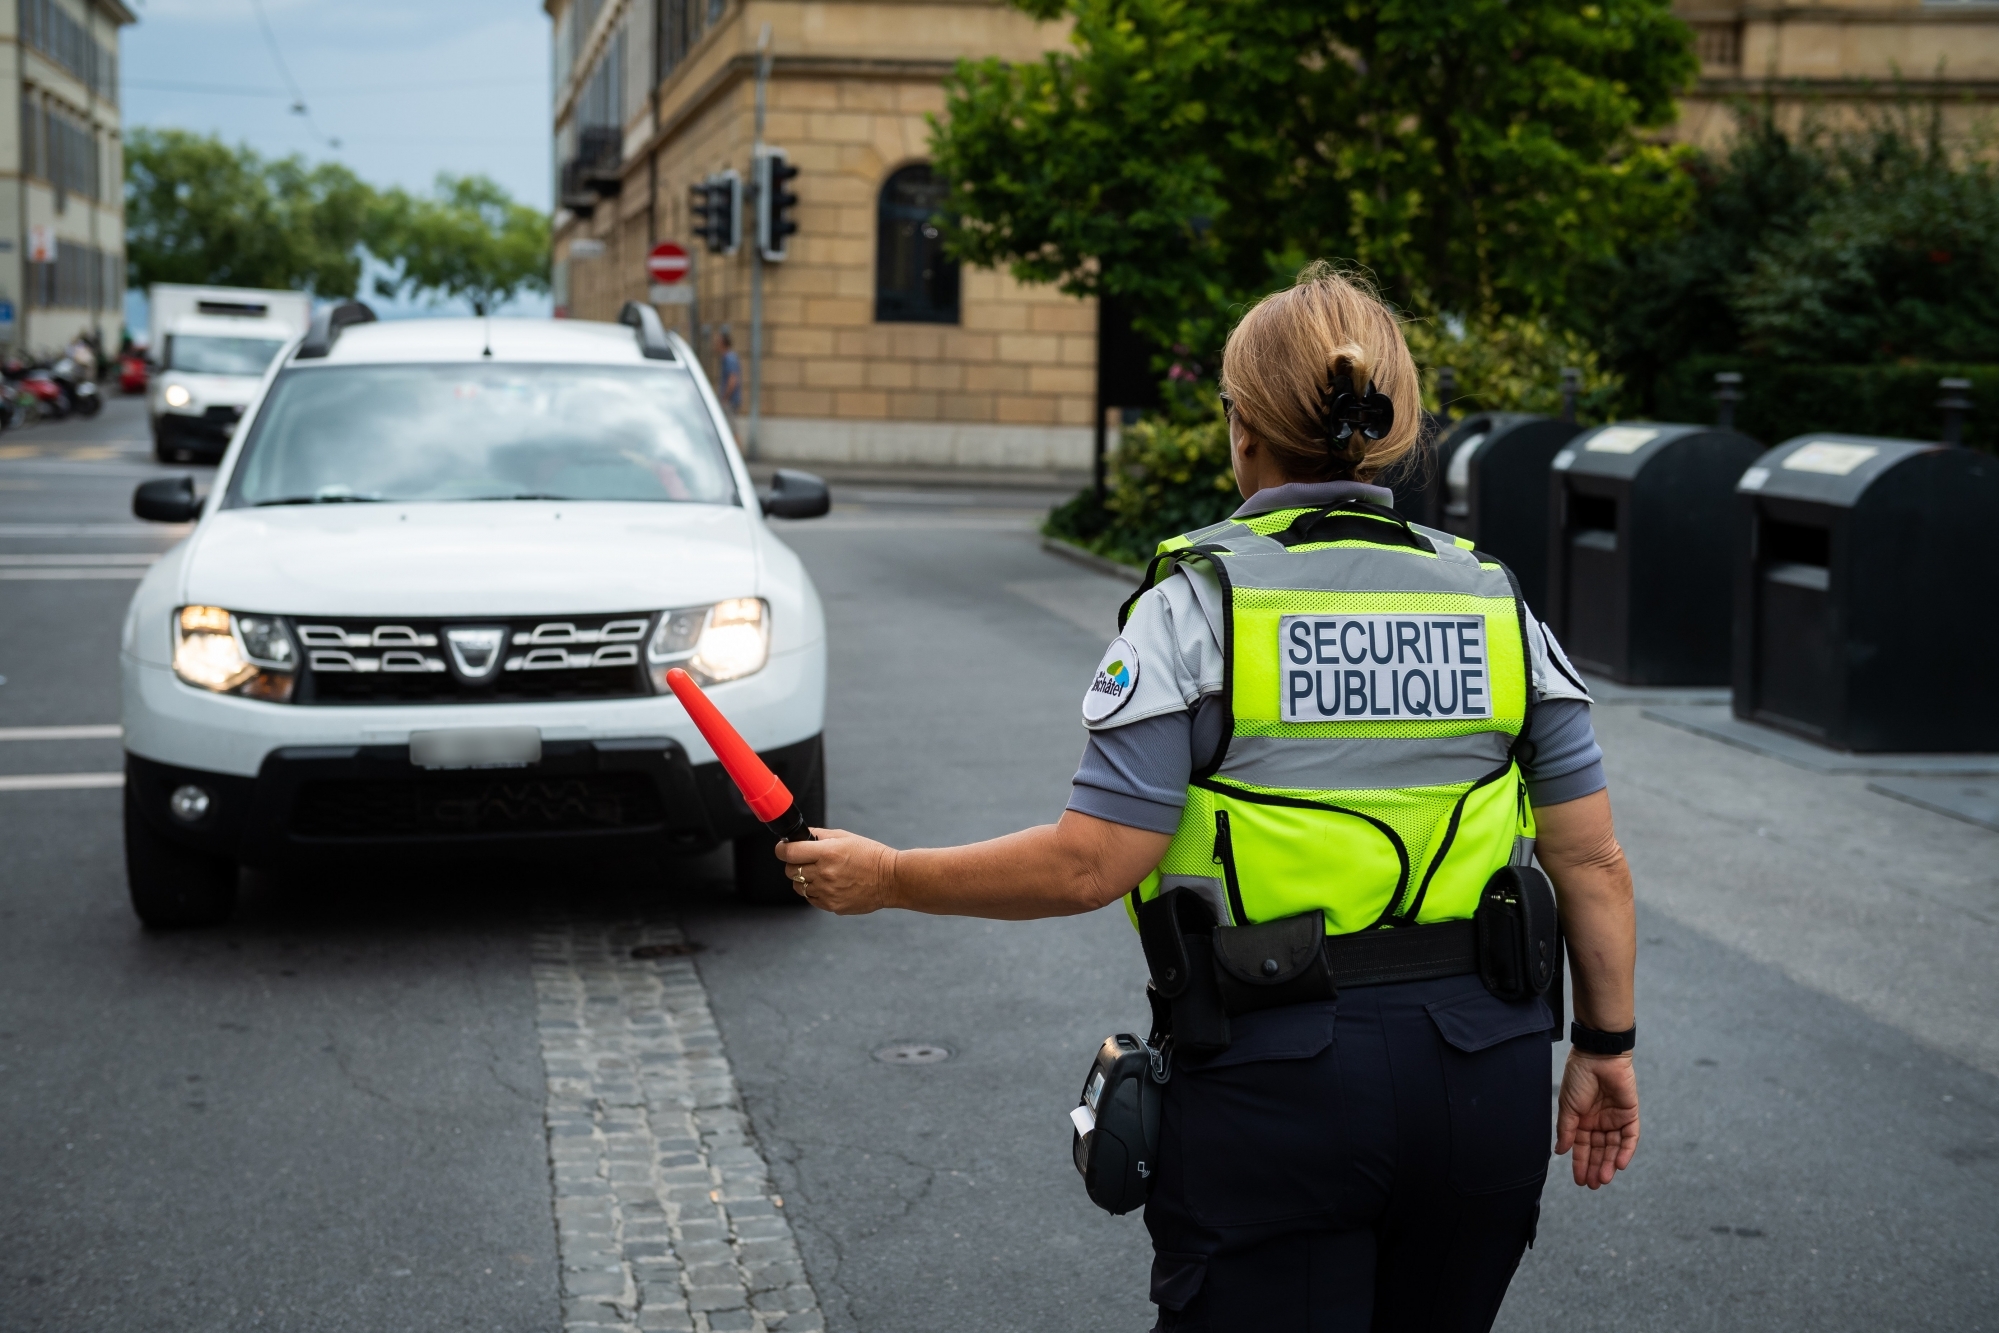 Les agents de la sécurité publique contrôlent les autorisations des véhicules entrant dans la zone piétonne.